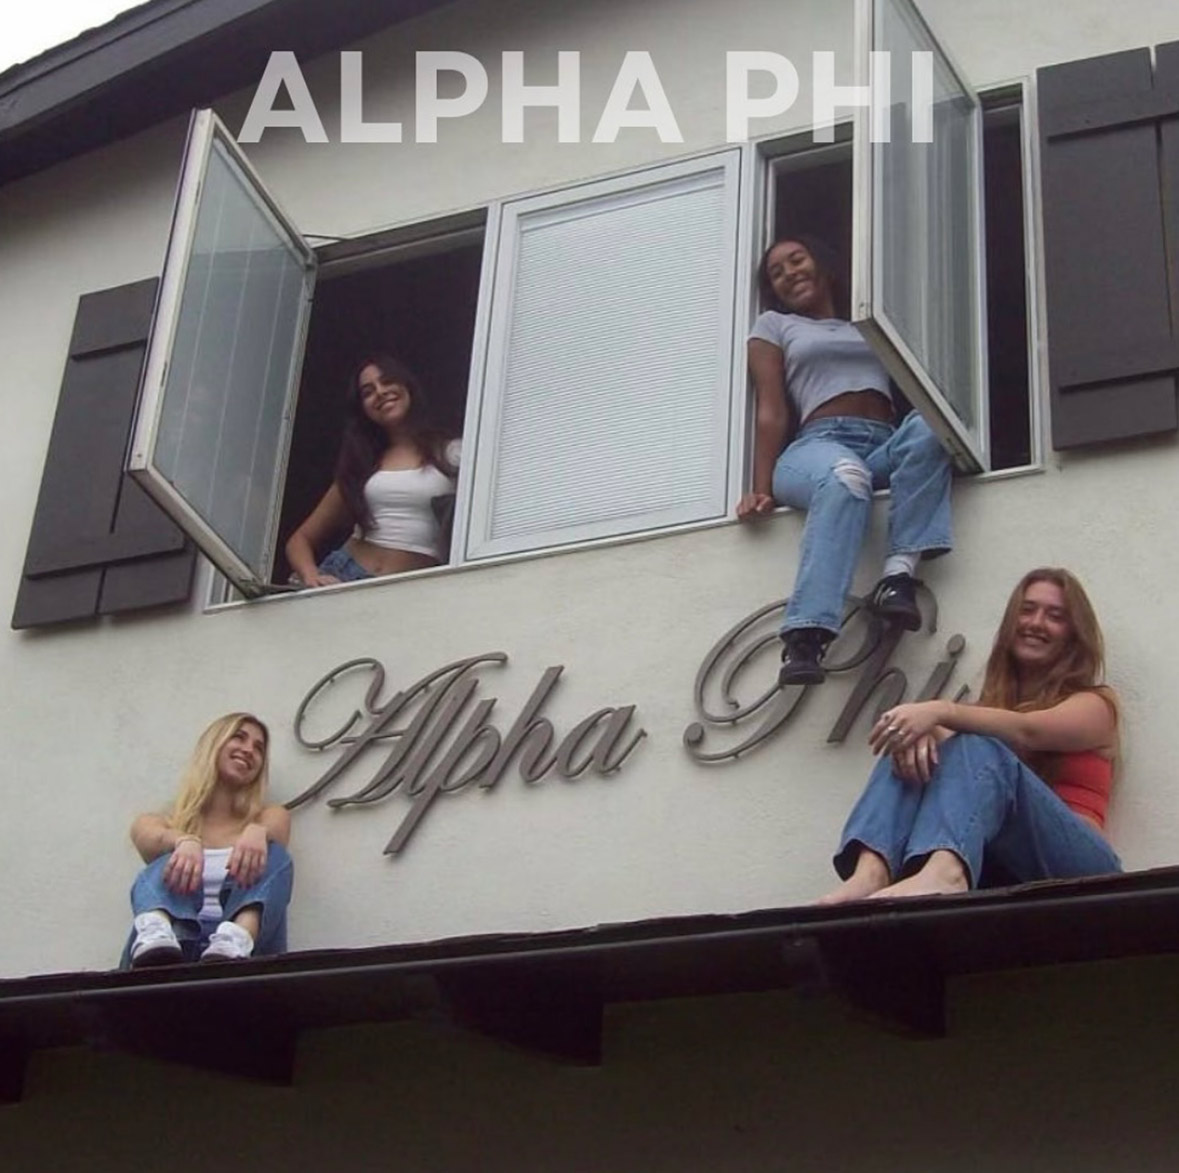 Alpha Phi members